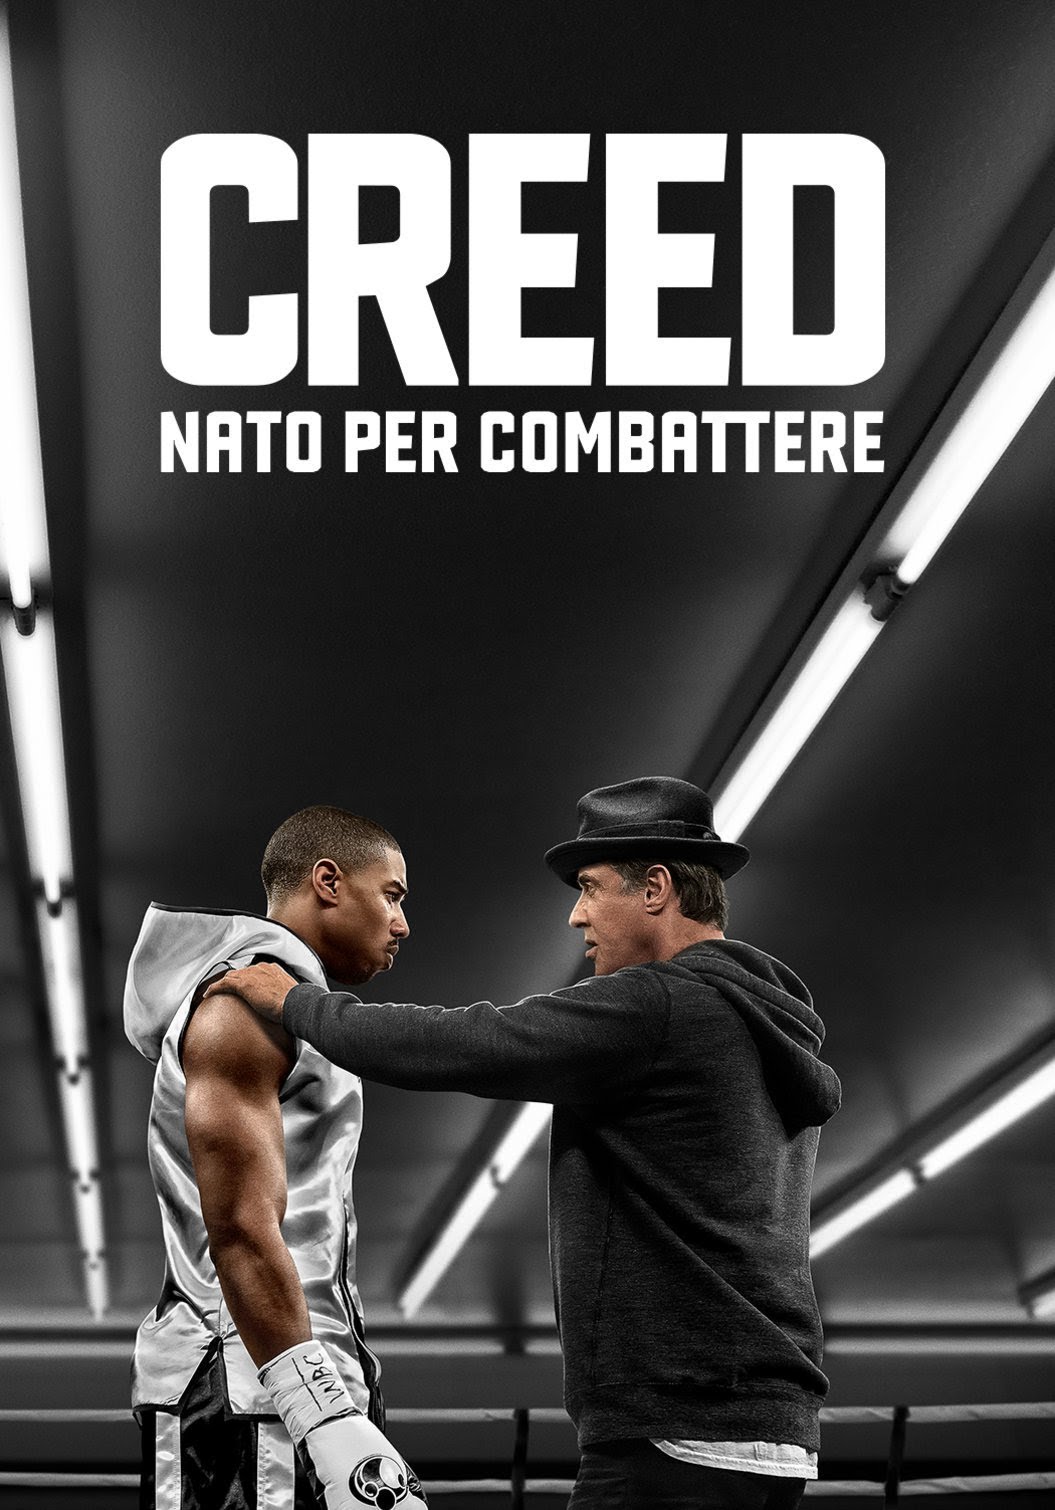 Creed – Nato per combattere [HD] (2016)